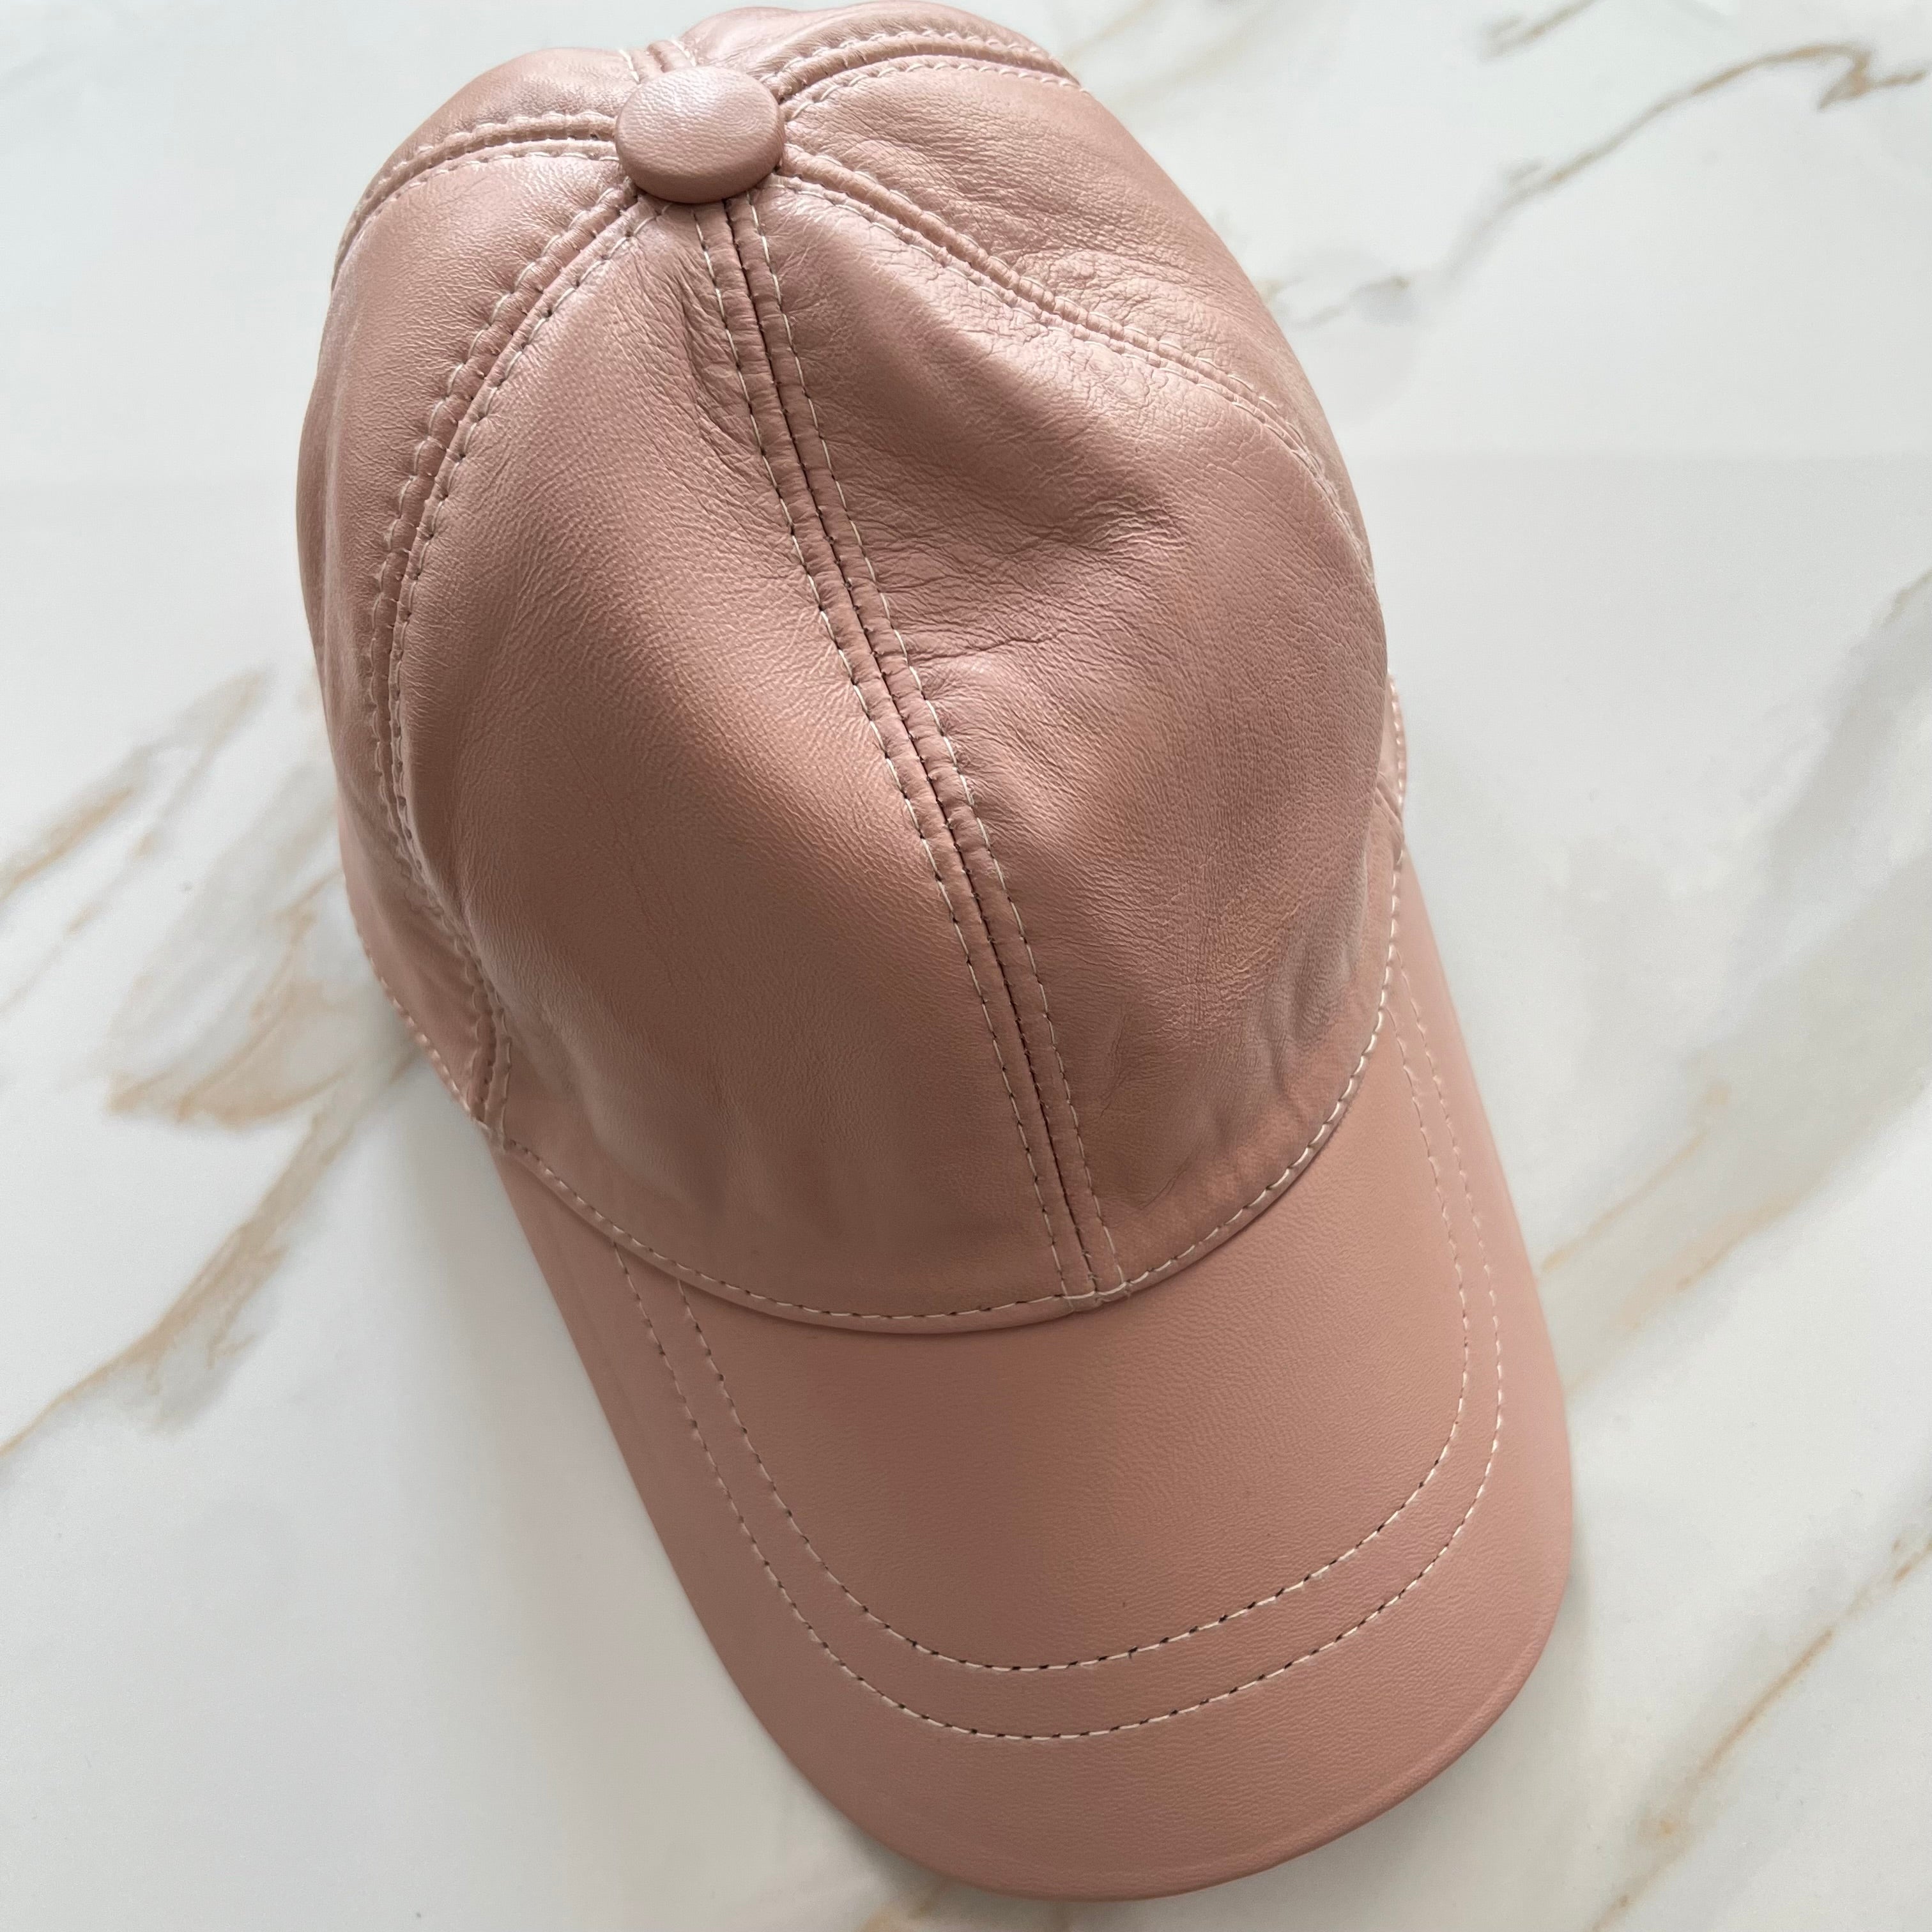 Peach Genuine Leather Cap